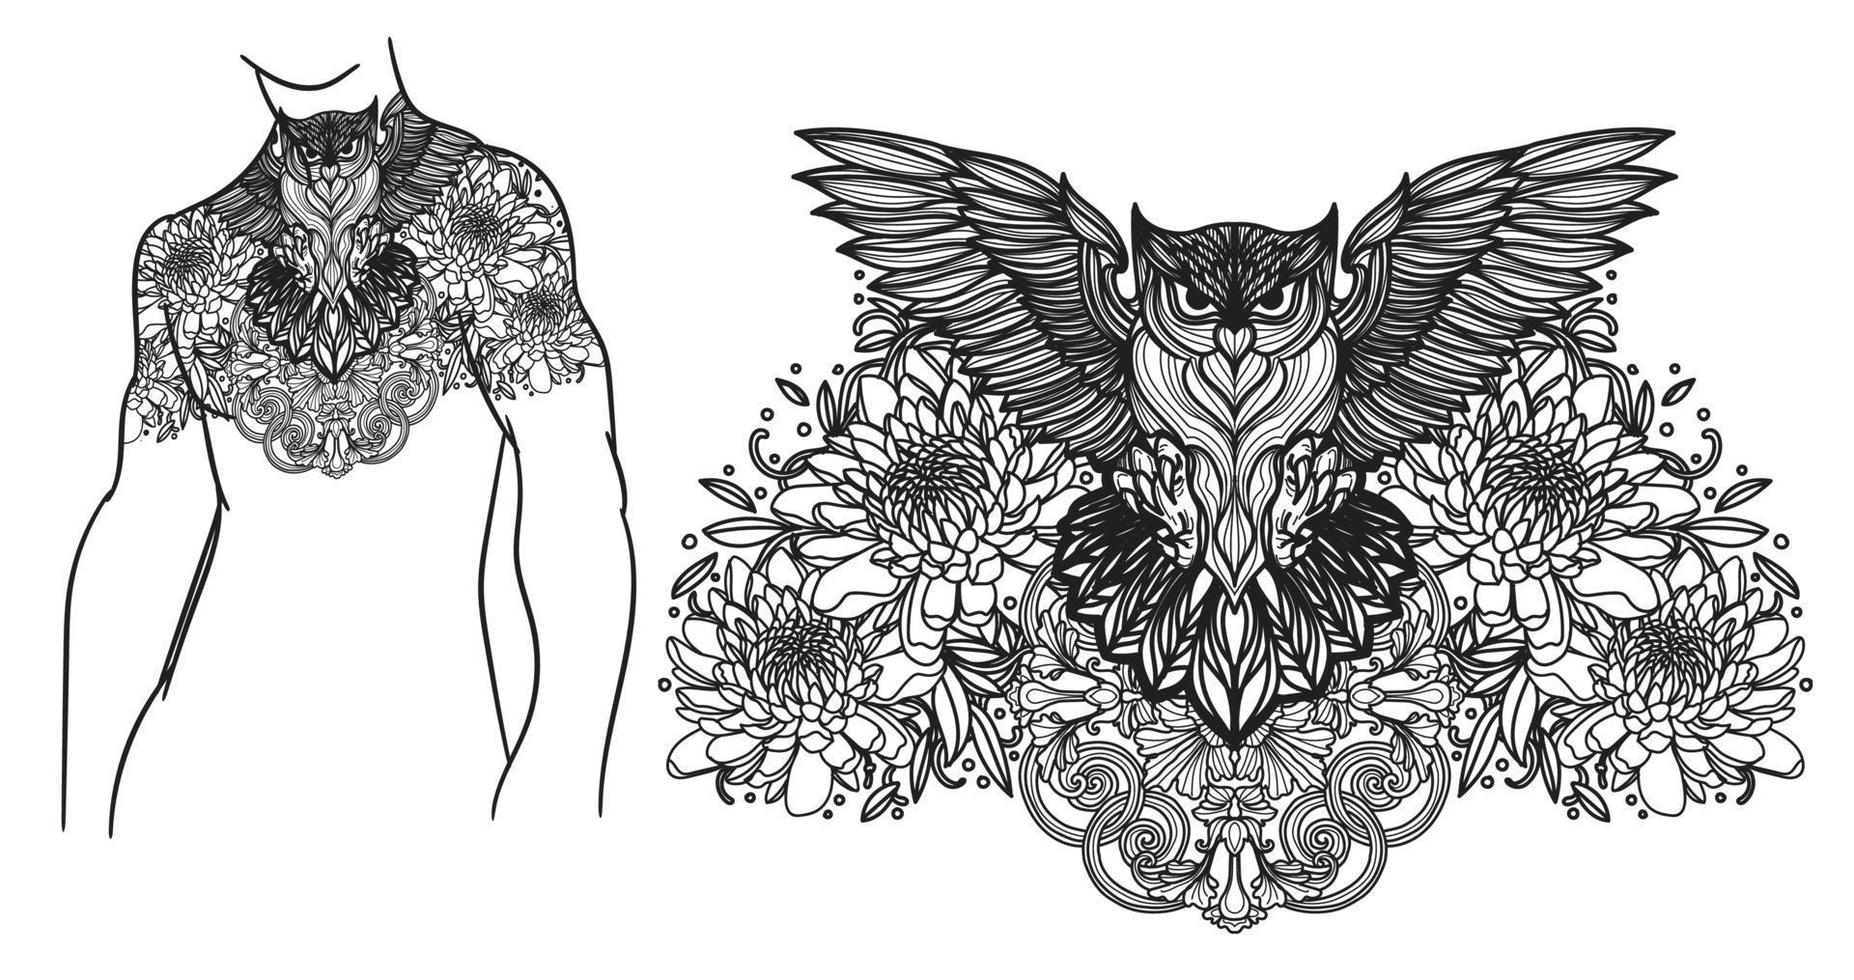 tatuering konst uggla och blomma hand ritning skiss svart och vitt vektor